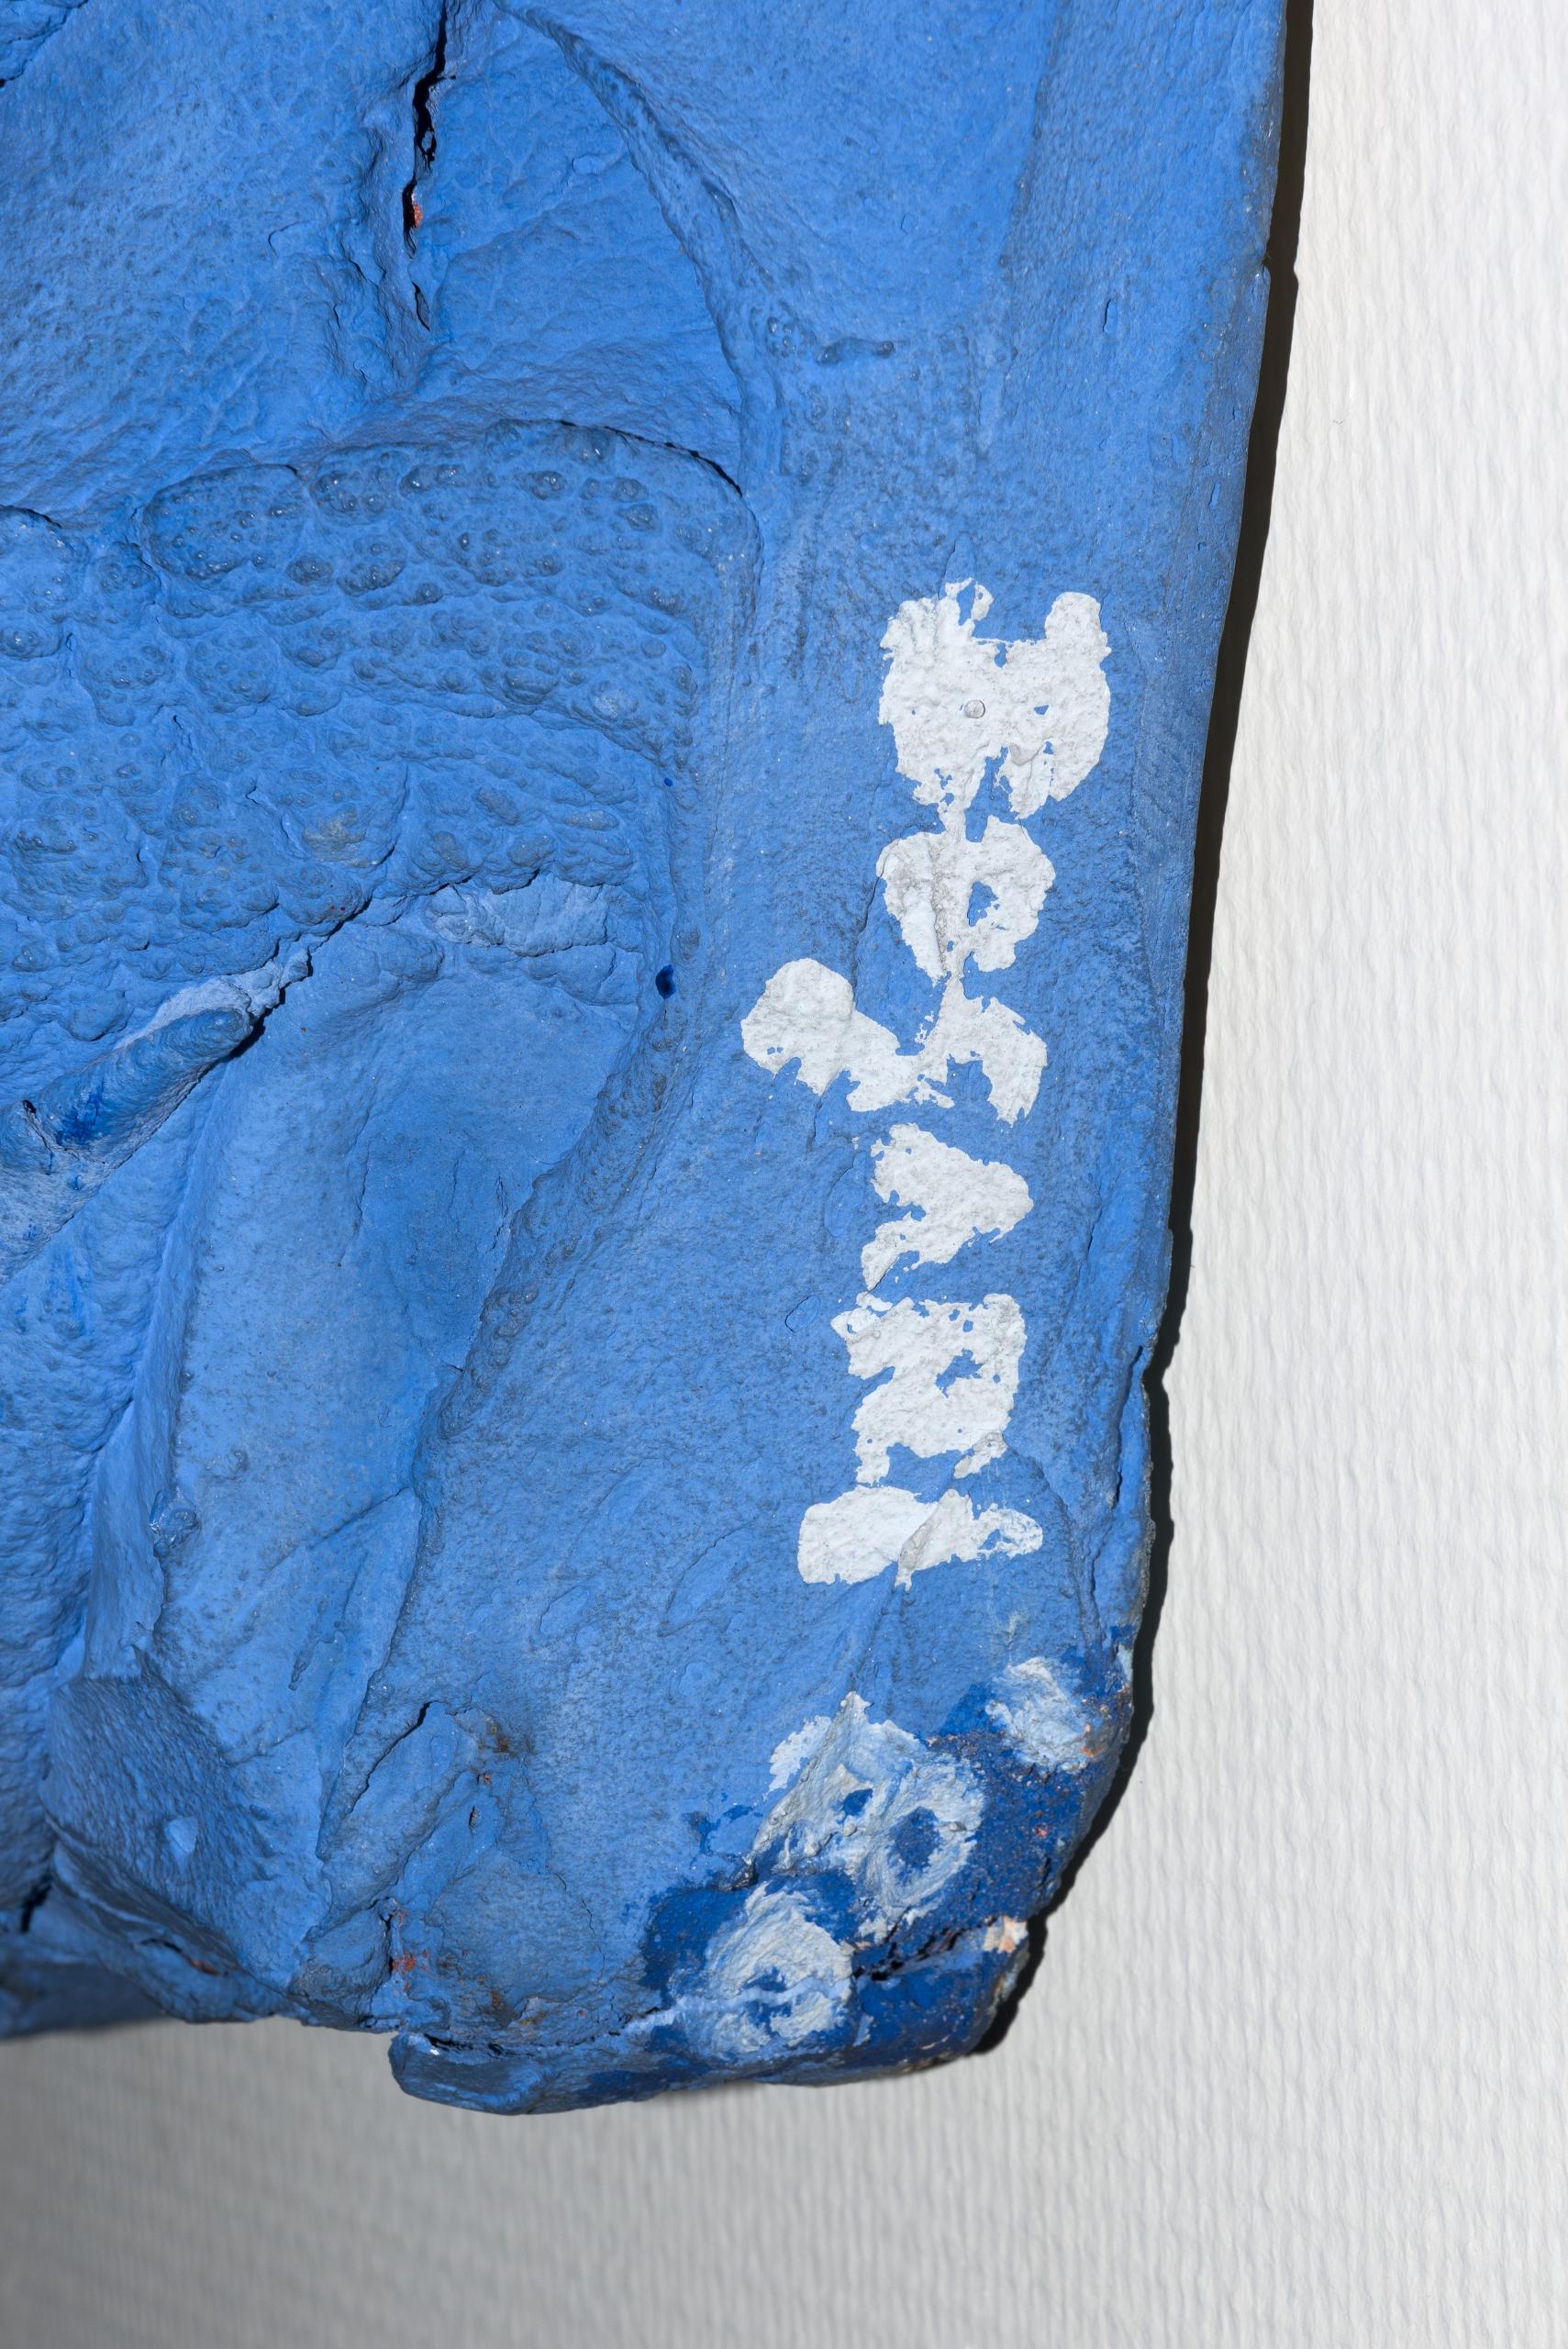 Tableau “Bluebleu” de l’expressionniste Bram Bogart, techniques mixtes, 1980.

Signature bord inférieur droit.

Dimensions : H 140 x L 140 x P5 cm.